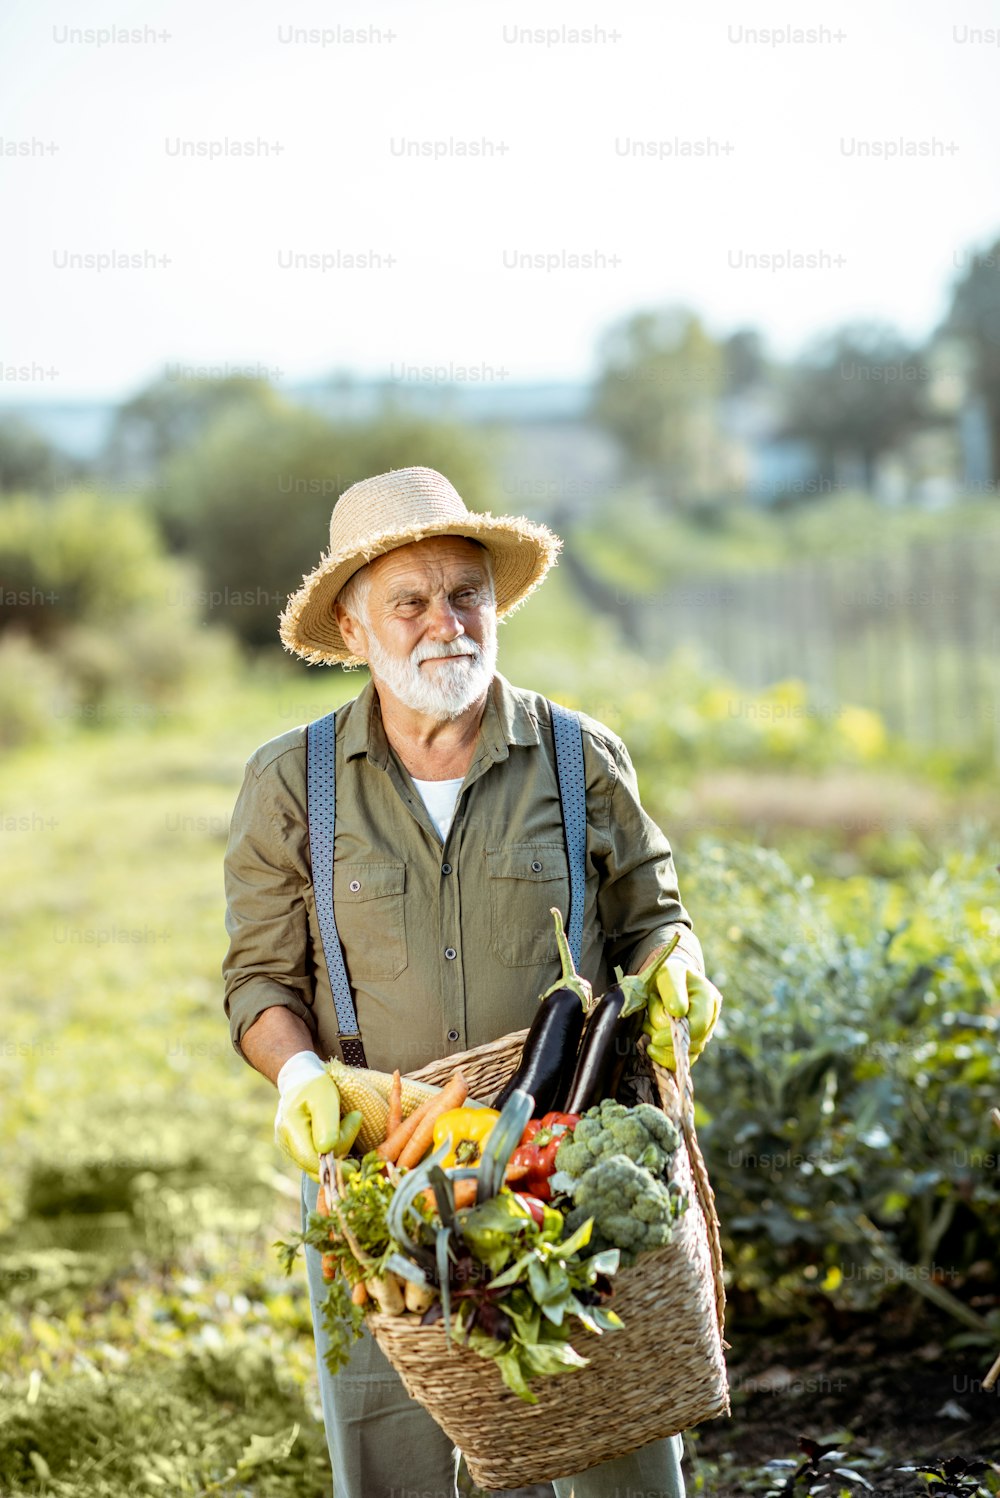 Porträt eines gut gekleideten Agronomen mit einem Korb voller frisch gepflücktem Gemüse im Garten im Freien. Konzept des Anbaus von Bio-Produkten und des aktiven Ruhestands